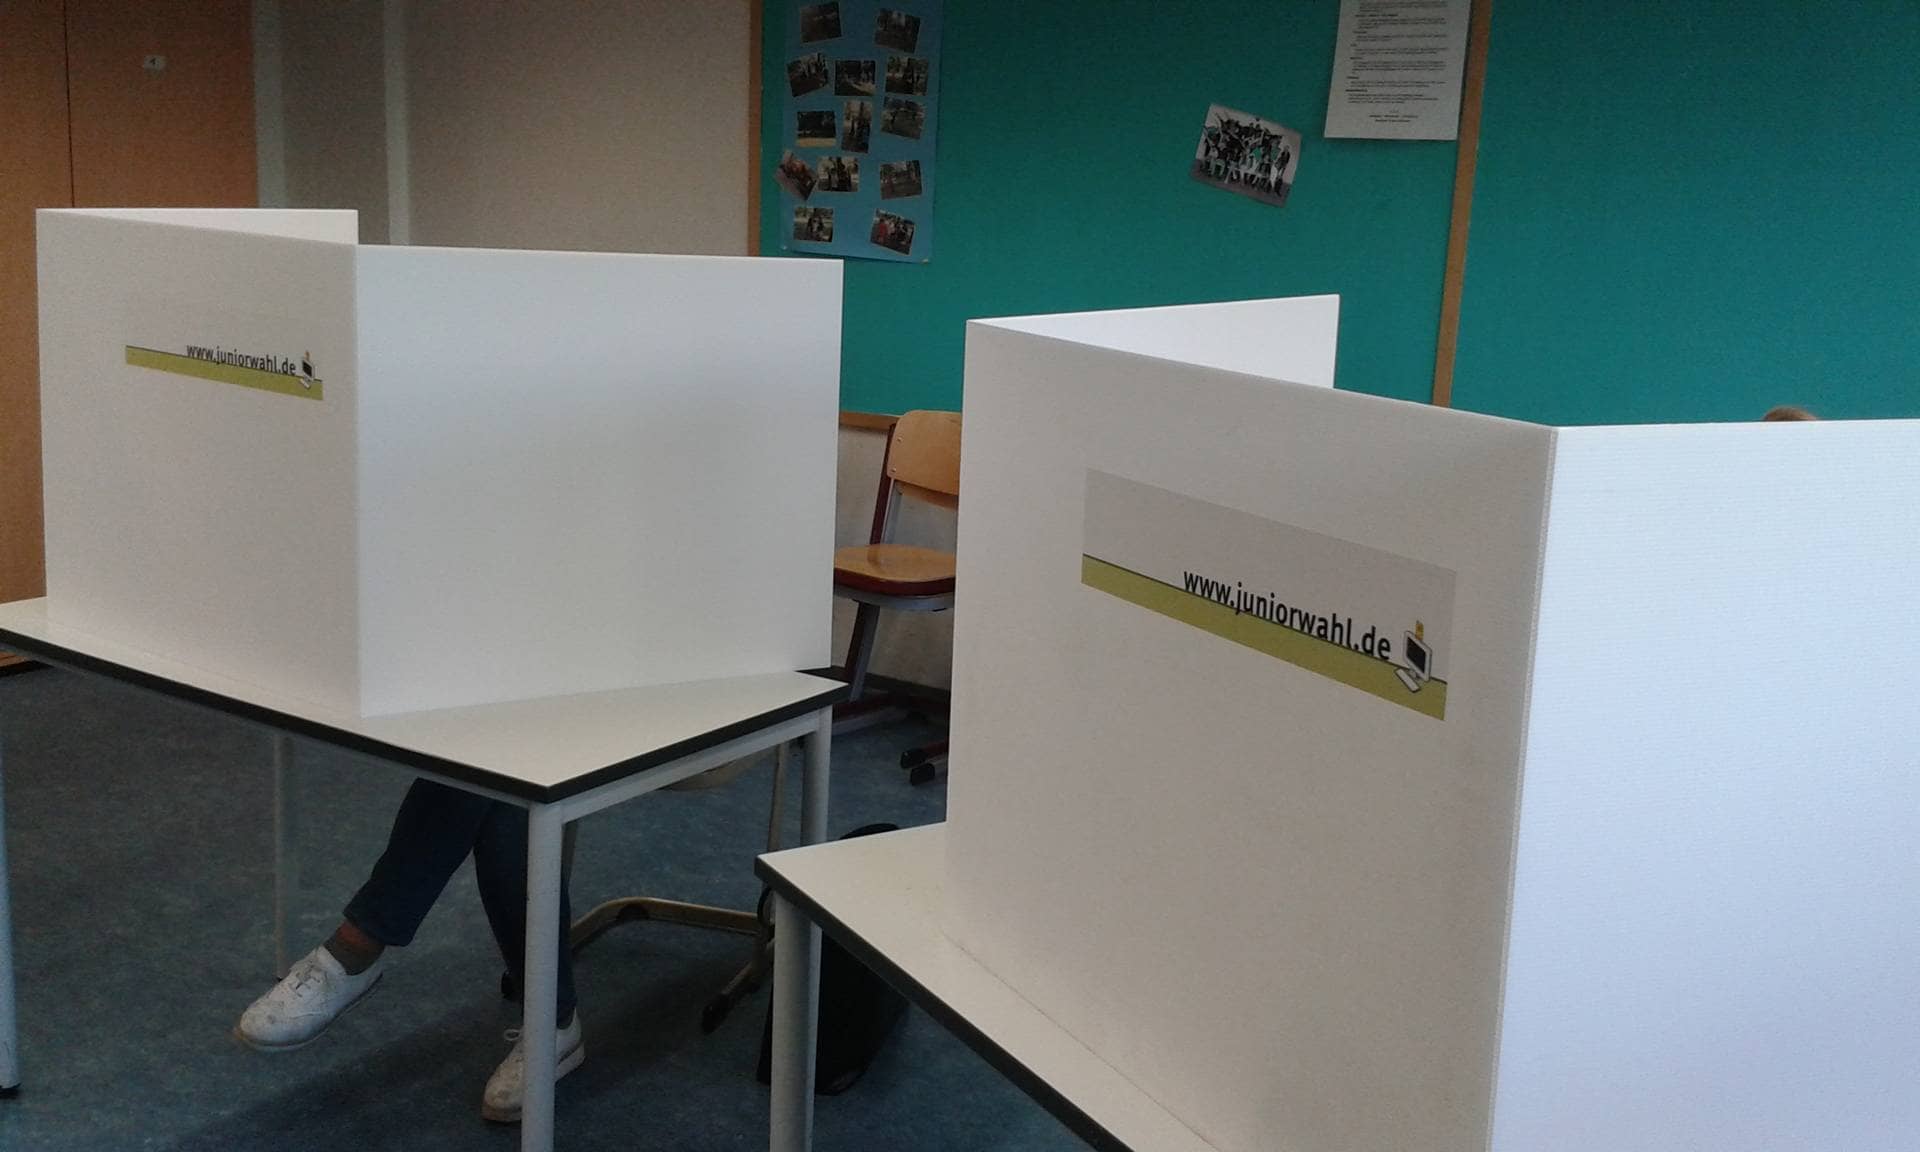 Zwei Wahlkabinen der Juniorwahl in einem Klassenzimmer